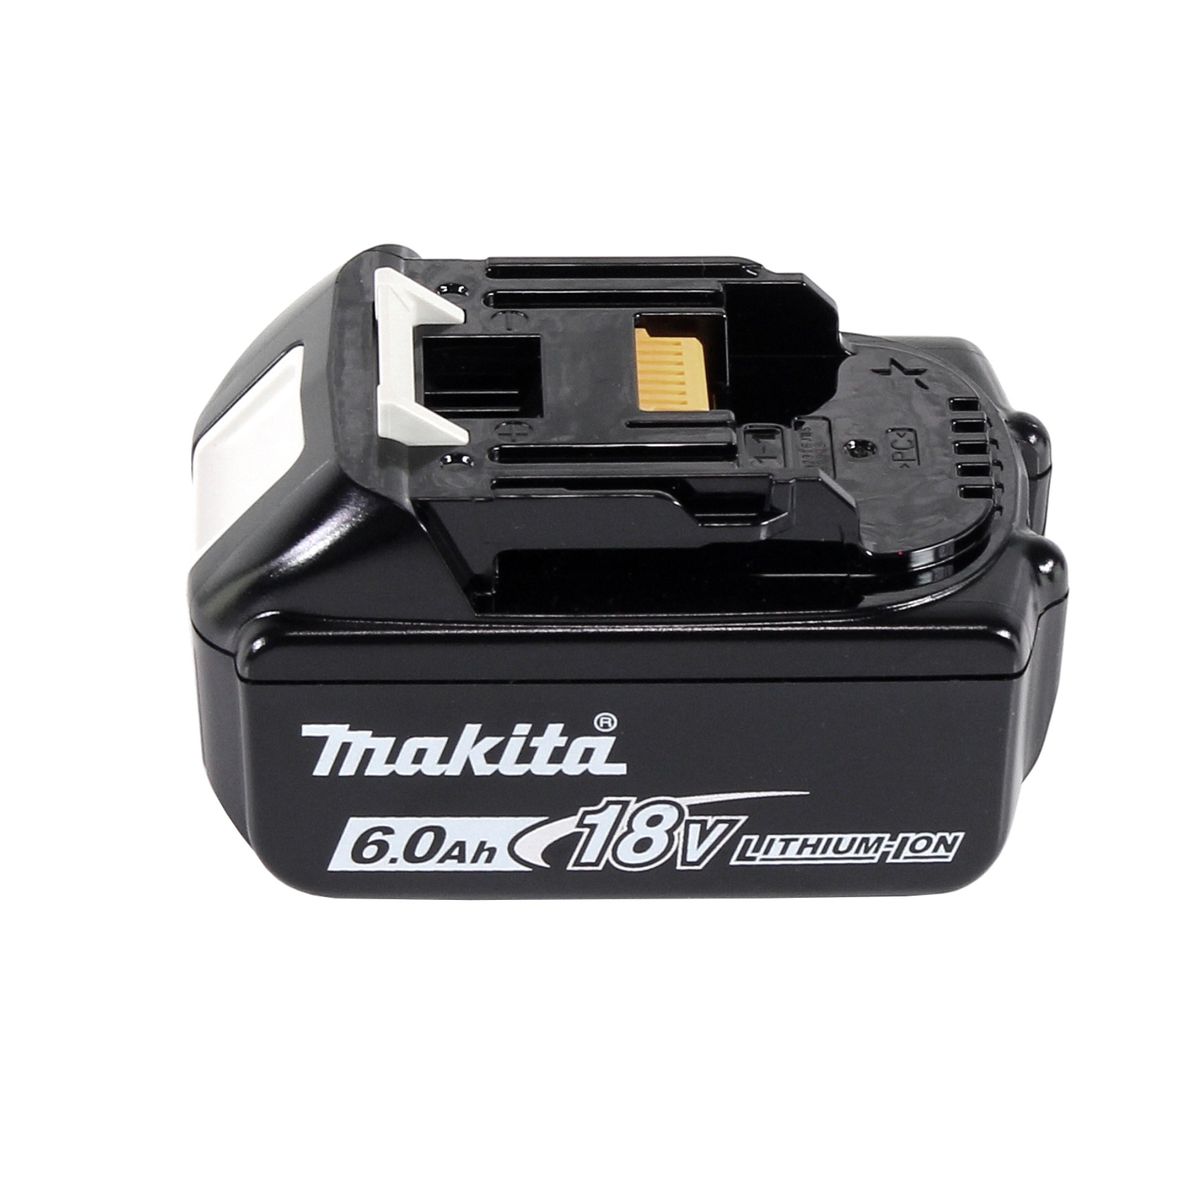 Makita DDF 484 G1 Perceuse-visseuse sans fil sans balais 18 V 54 Nm + 1x Batterie 6,0 Ah - sans chargeur